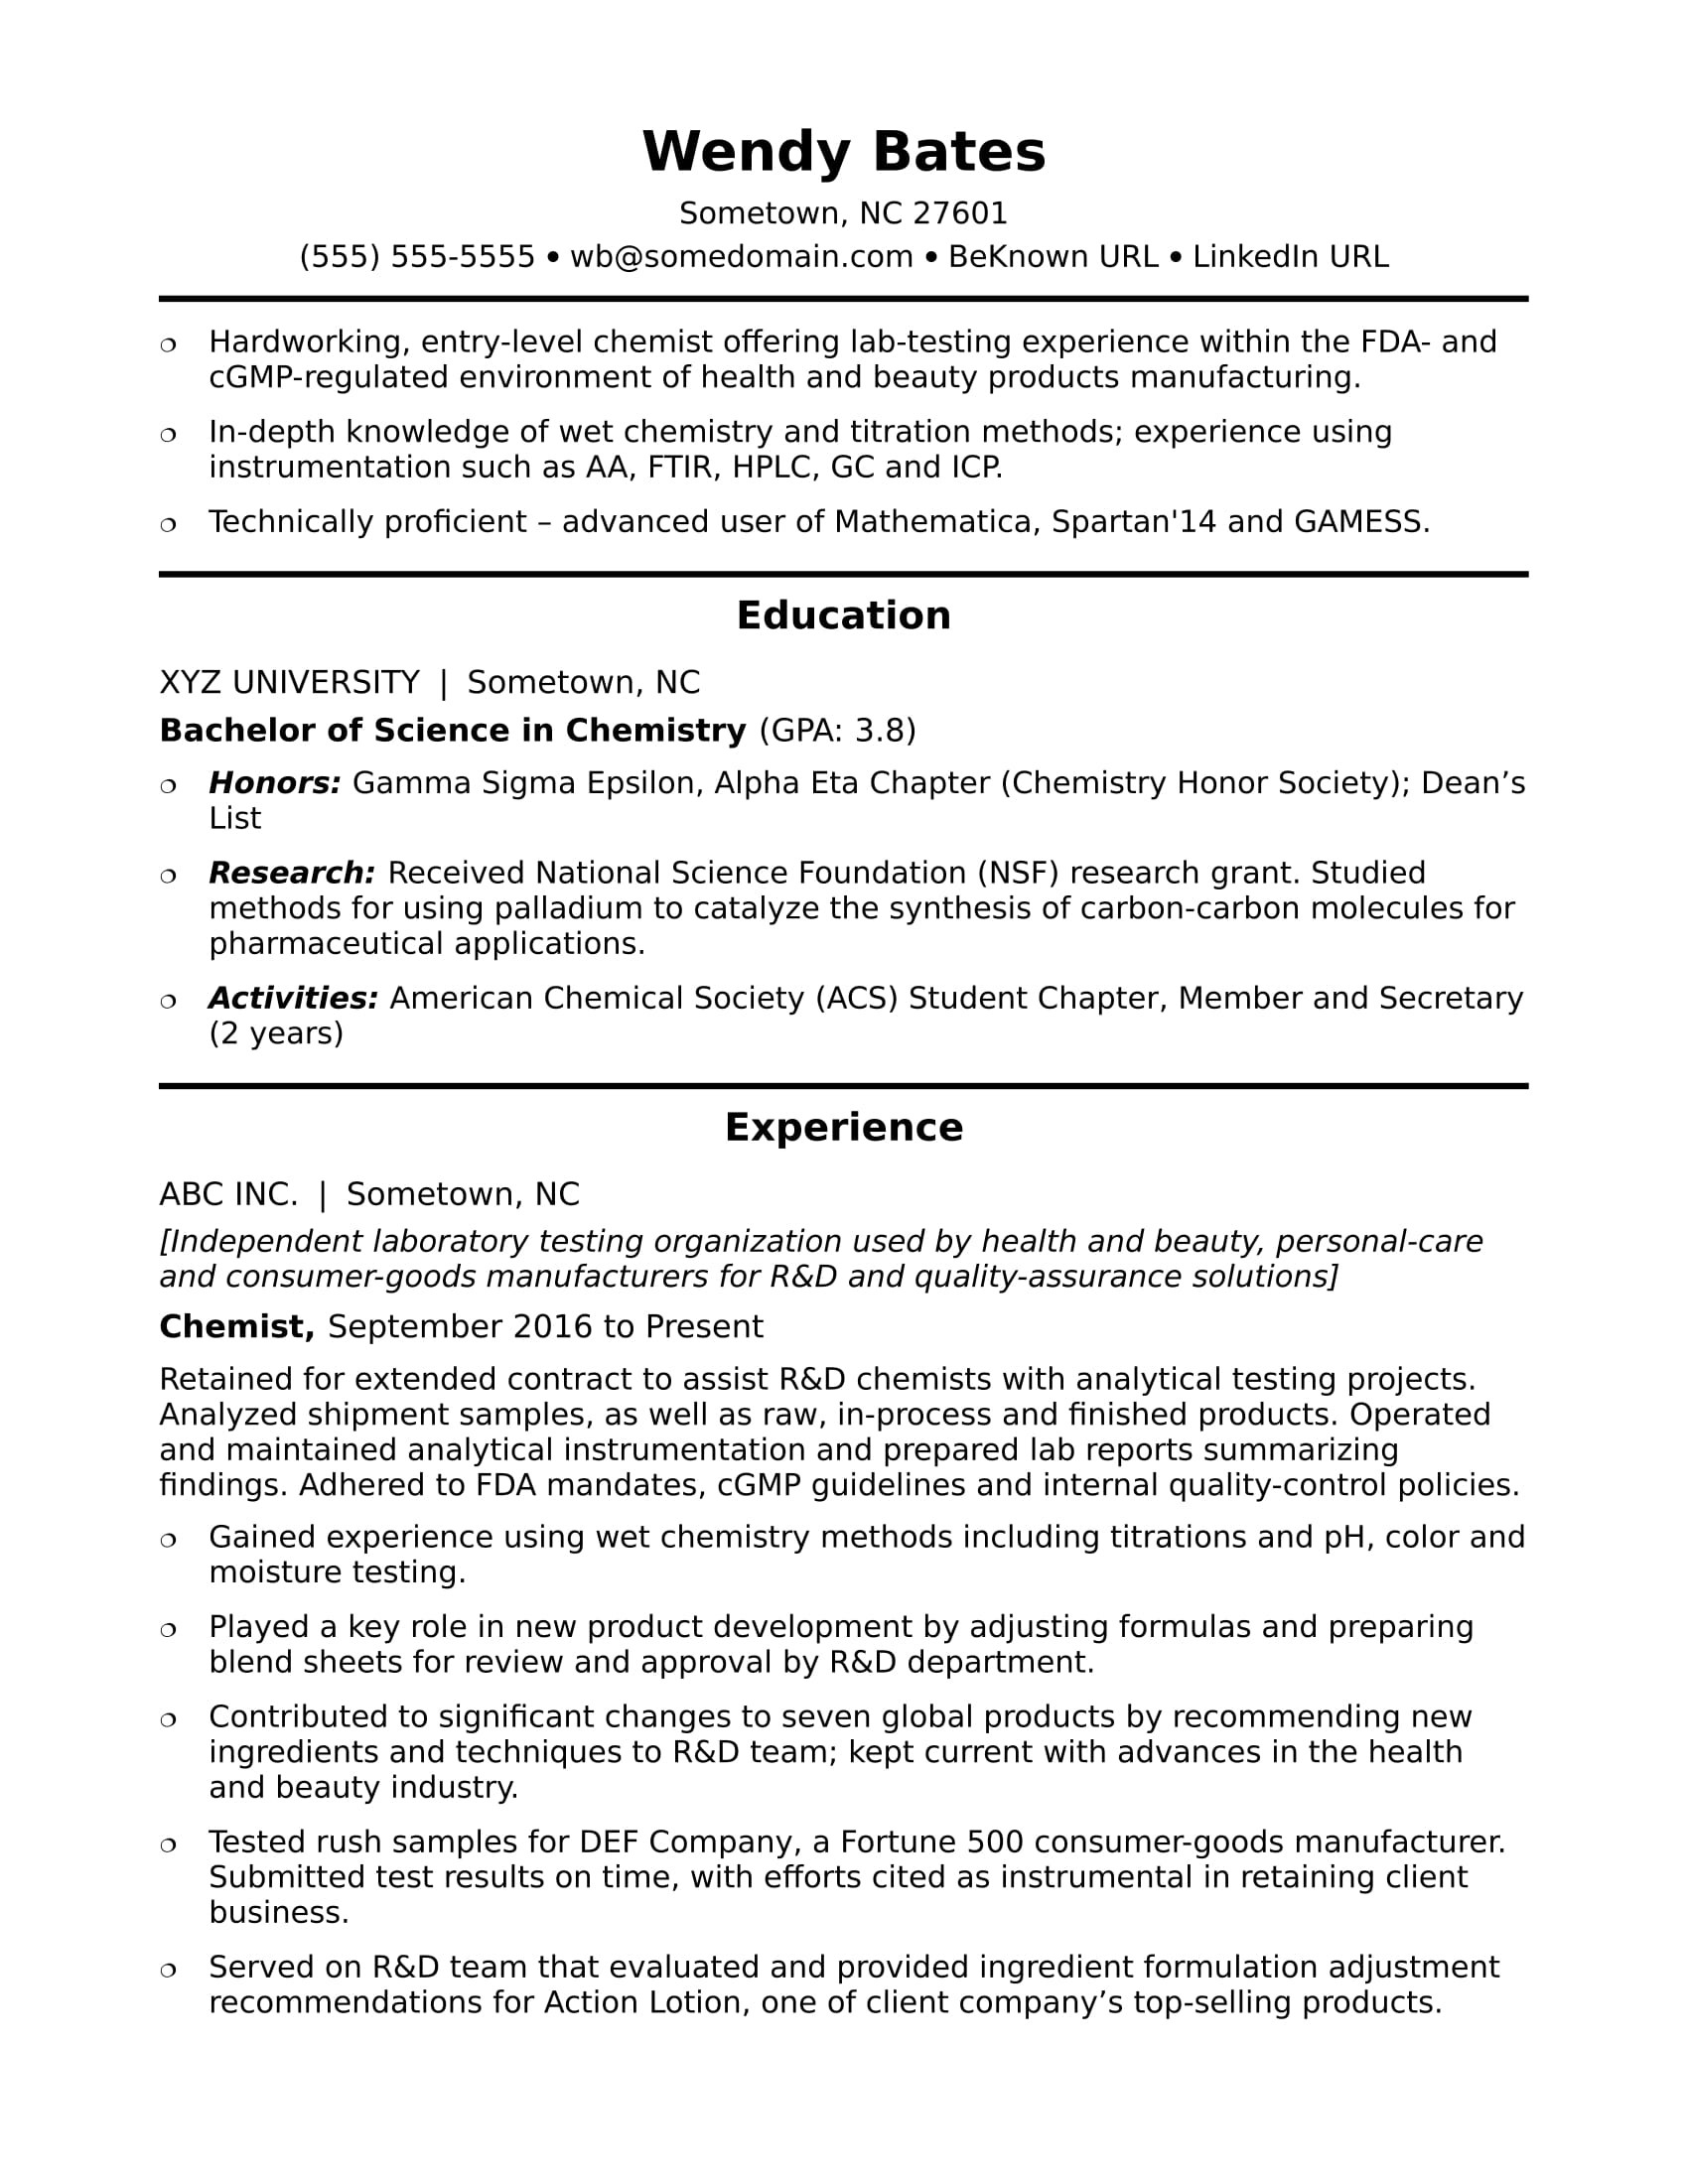 Sample Resume for School Job Entry Level Entry-level Chemist Resume Sample Monster.com